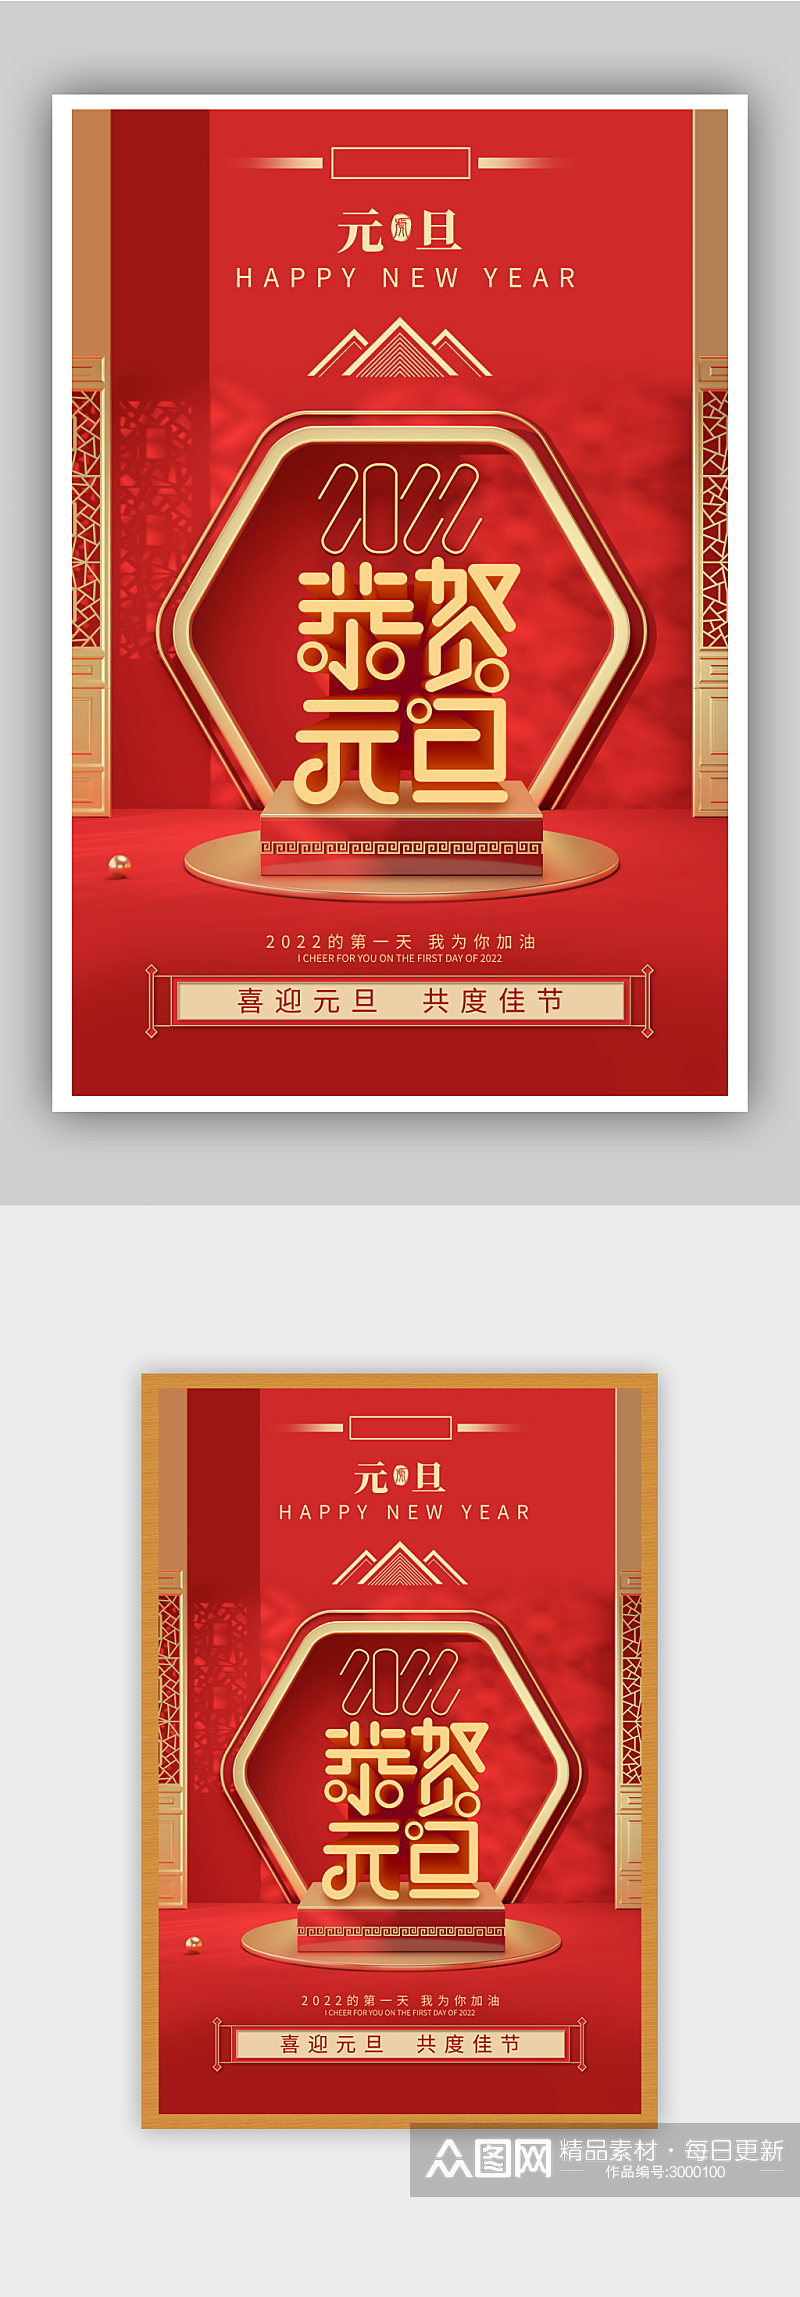 红色喜庆元旦节庆祝海报素材